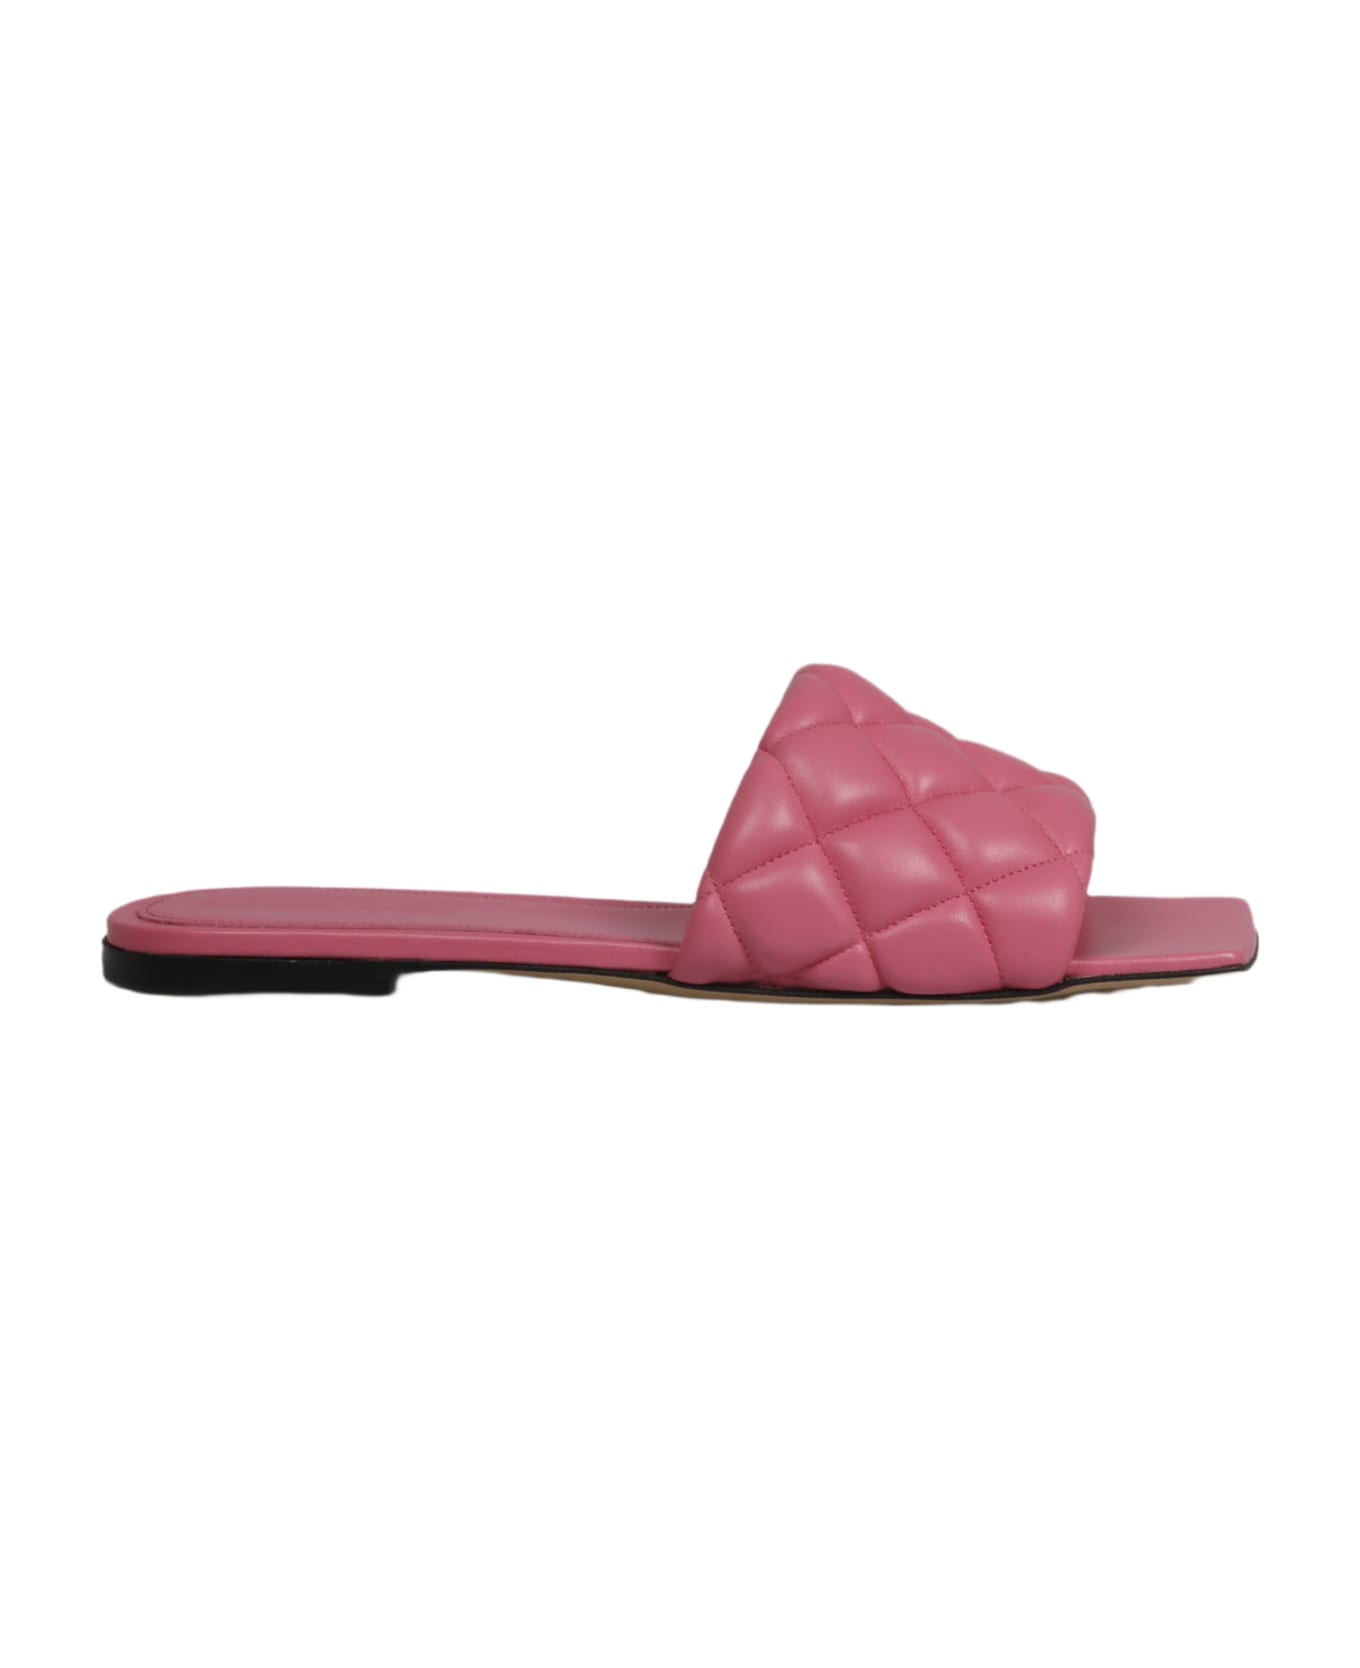 Bottega Veneta Padded Slippers - Pink & Purple